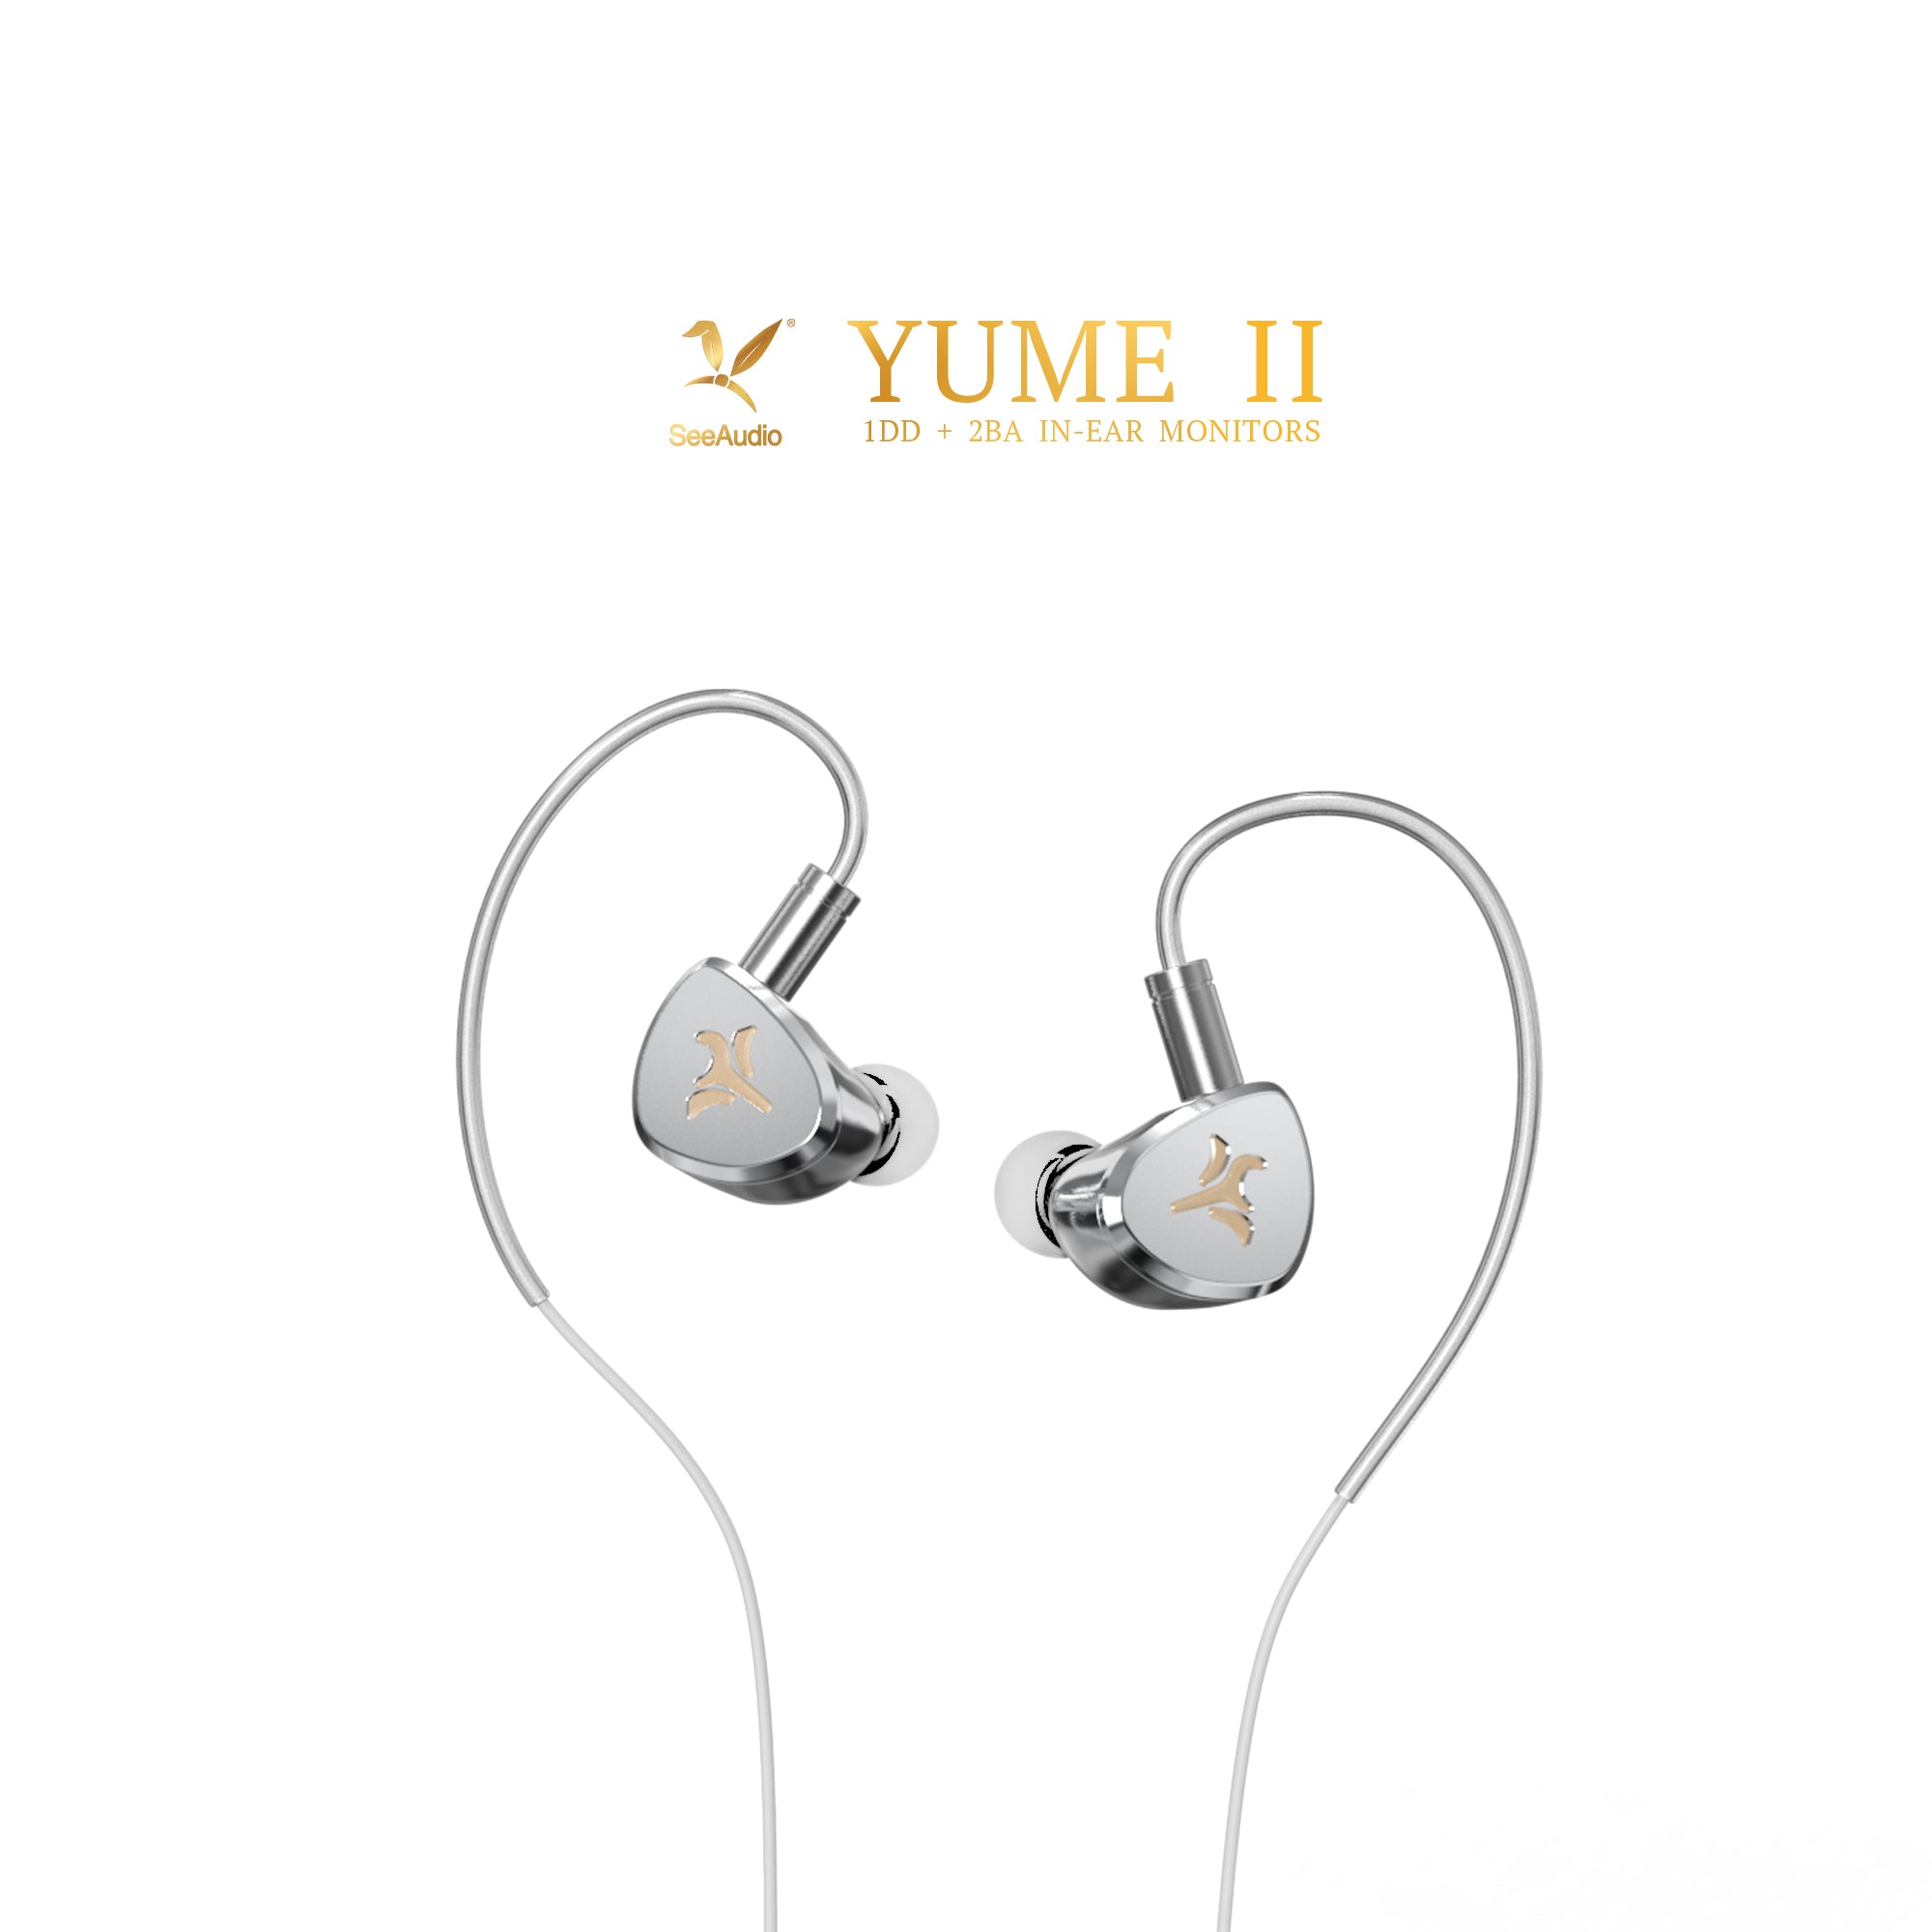 [5% off] See Audio YUME II / SeeAudio YUME 2 (2022) 3 Drivers (1DD+2BA) Hybrid IEM In-Ear Monitor Earphone